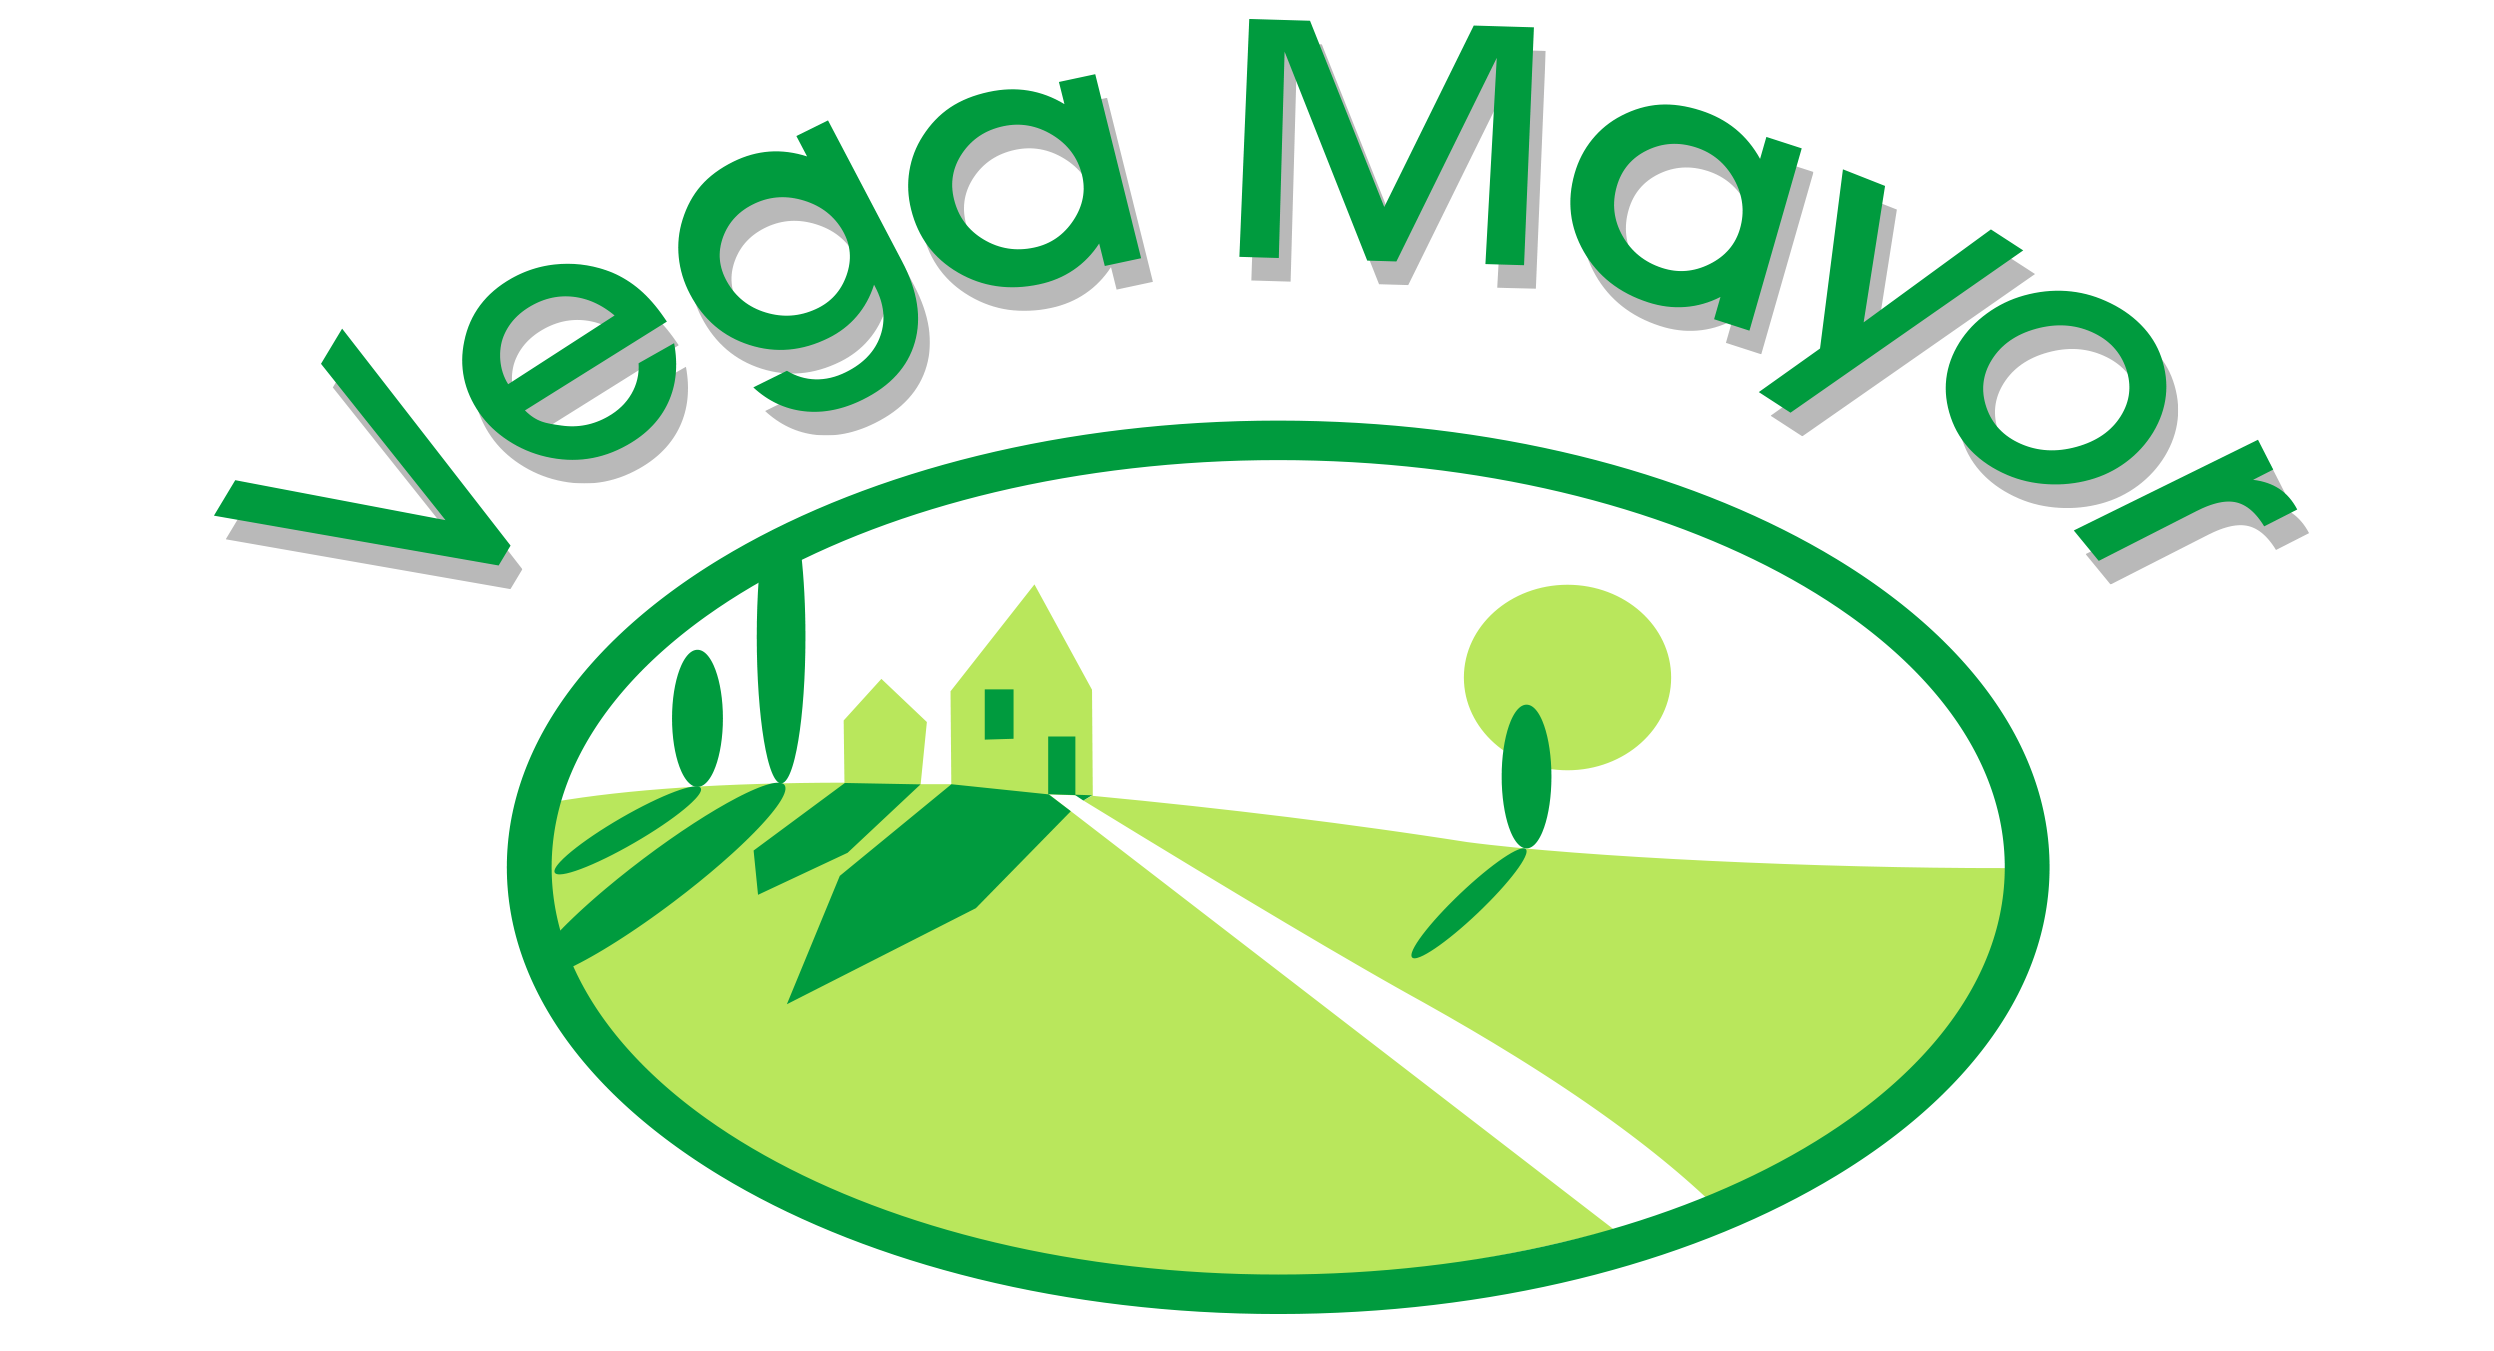 Vega Mayor